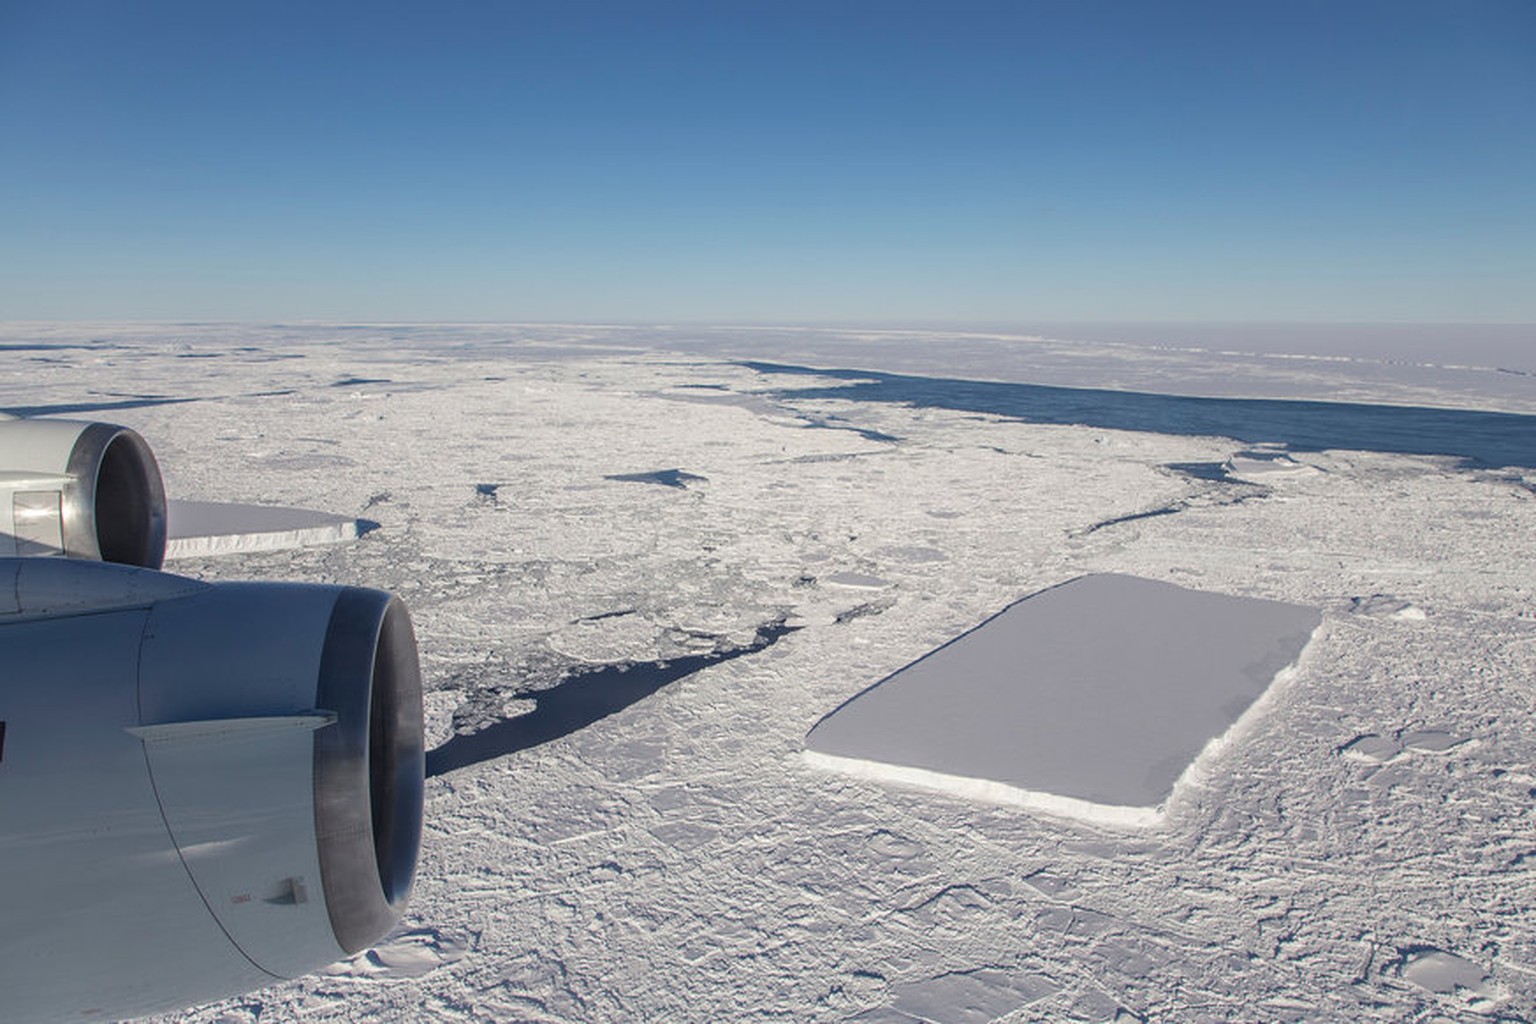 Von einem Nasa-Flugzeug aus wurde im Oktober 2018 dieser ungewöhnliche Eisblock fotografiert.